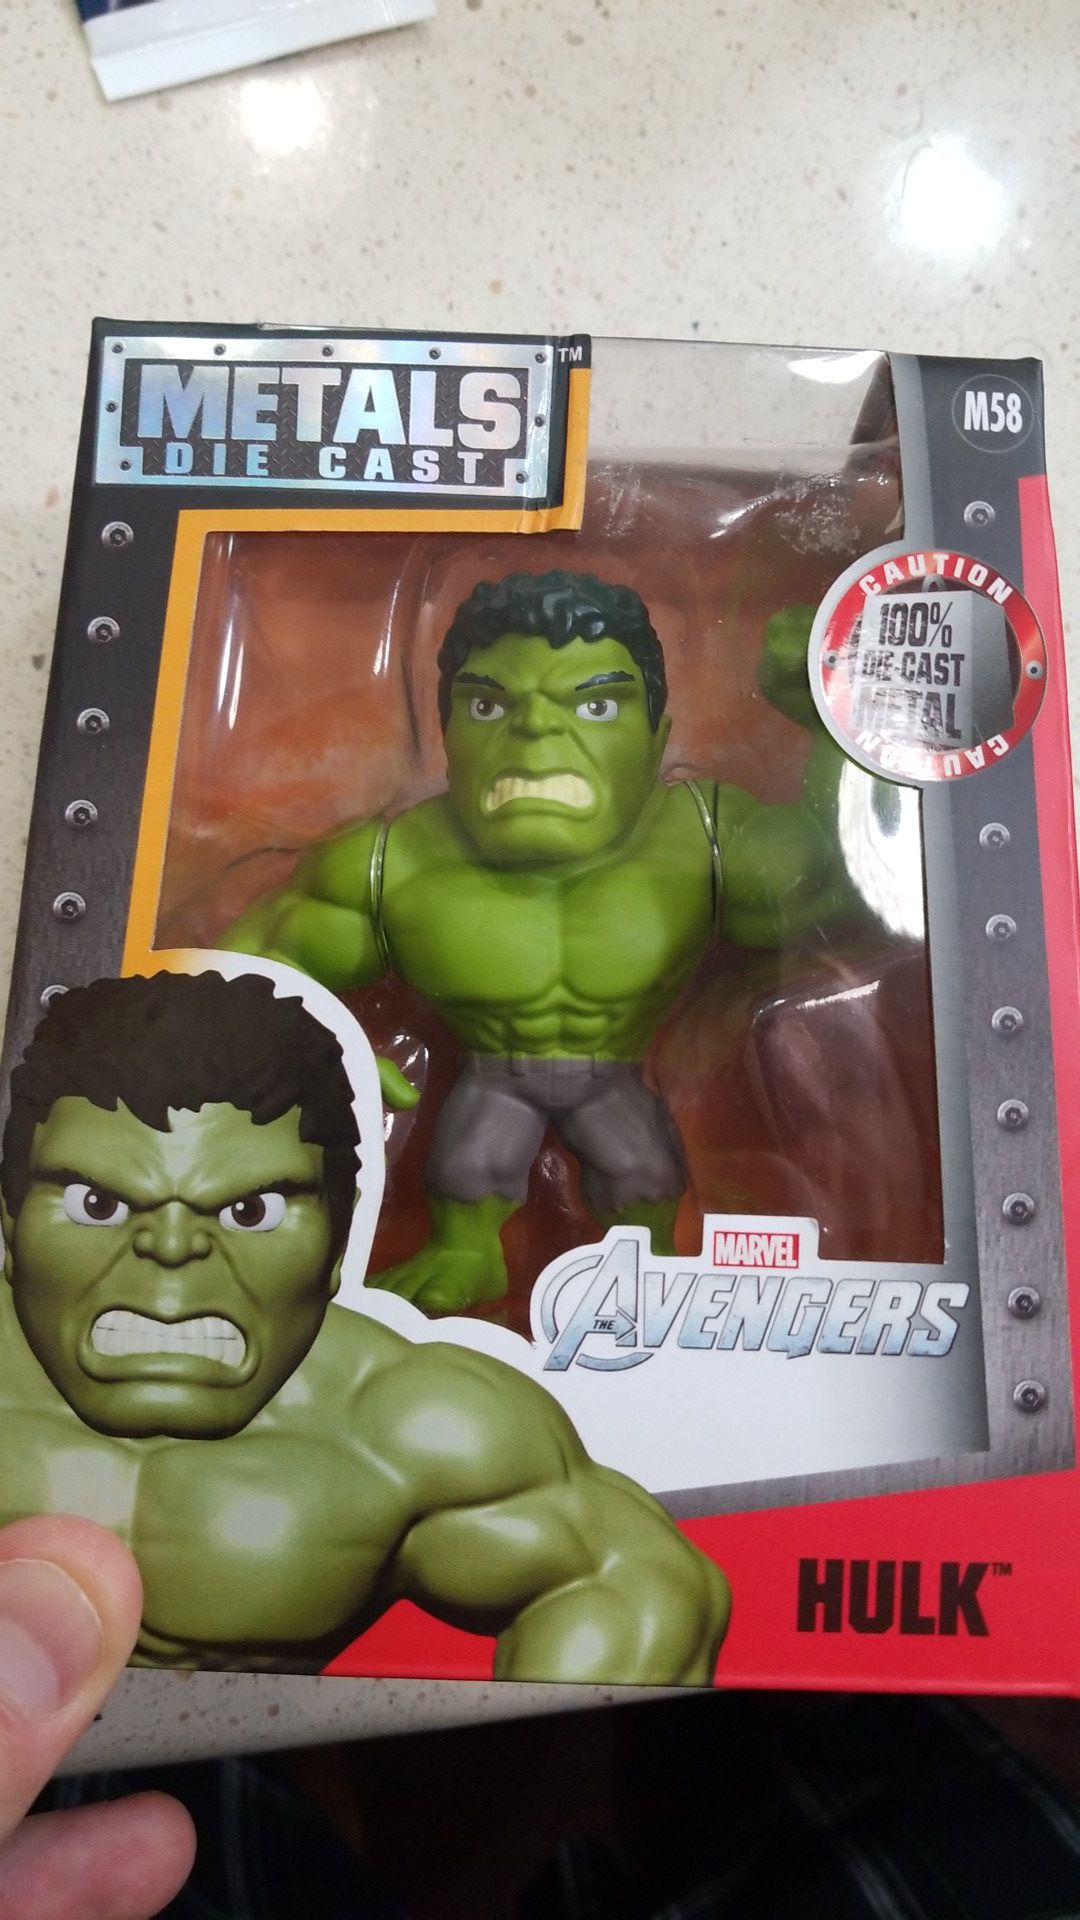 Hulk Avengers All Metal Die Cast Figure